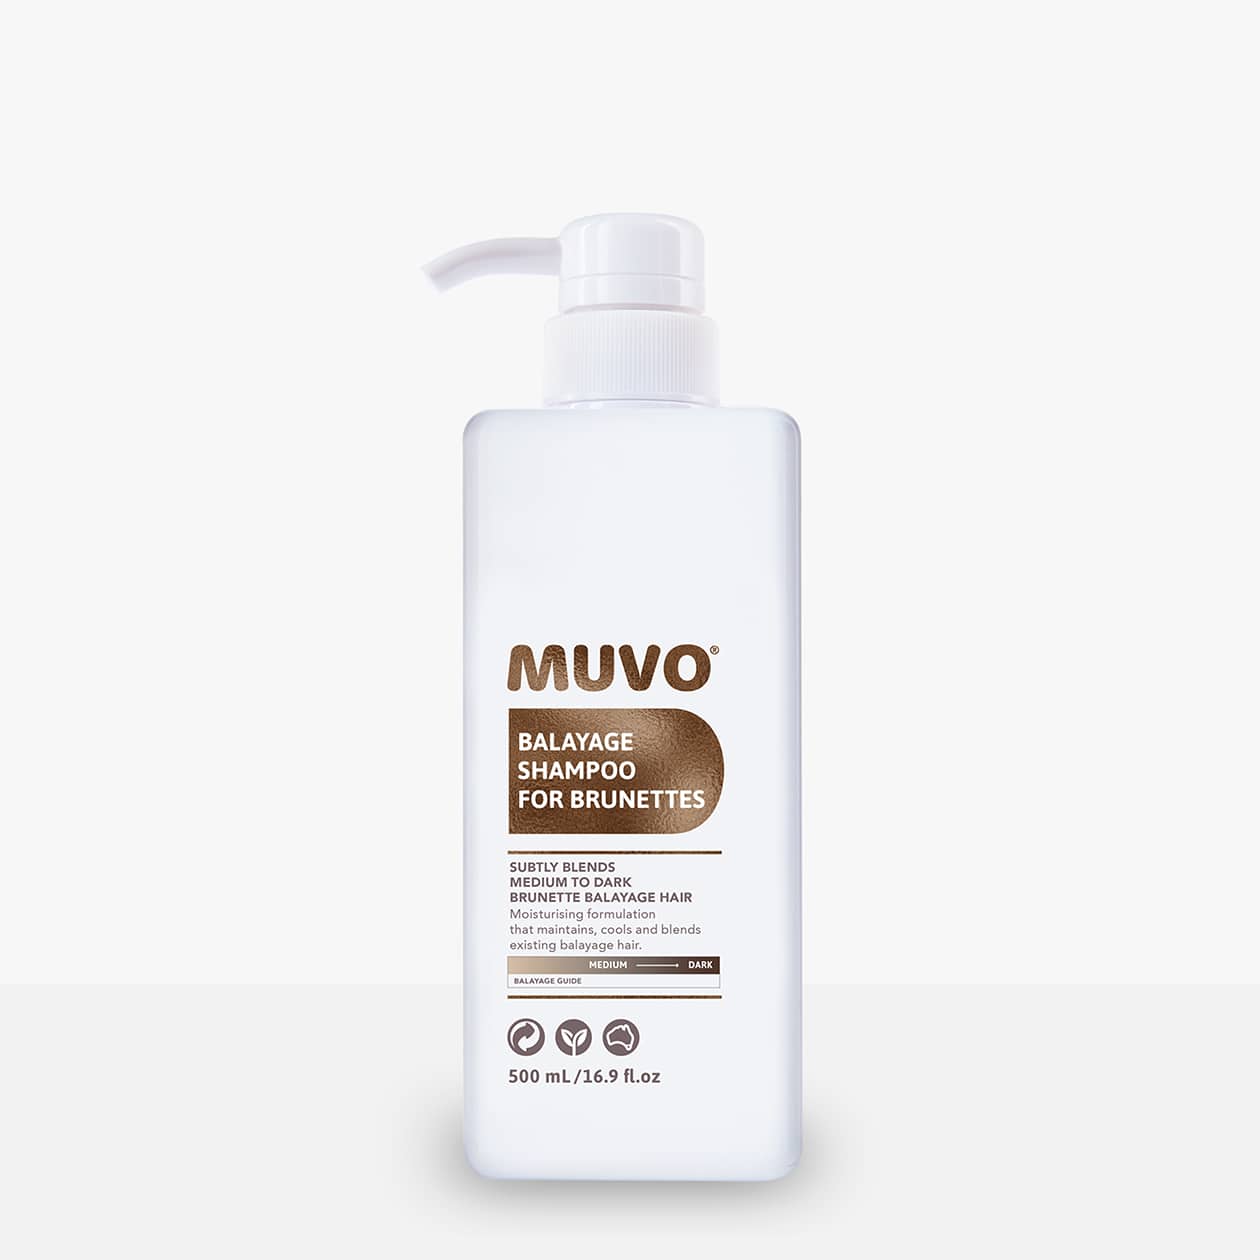 MUVO Balayage Shampoo for Brunettes - Shampoo voor balayage en highlights in bruin haar